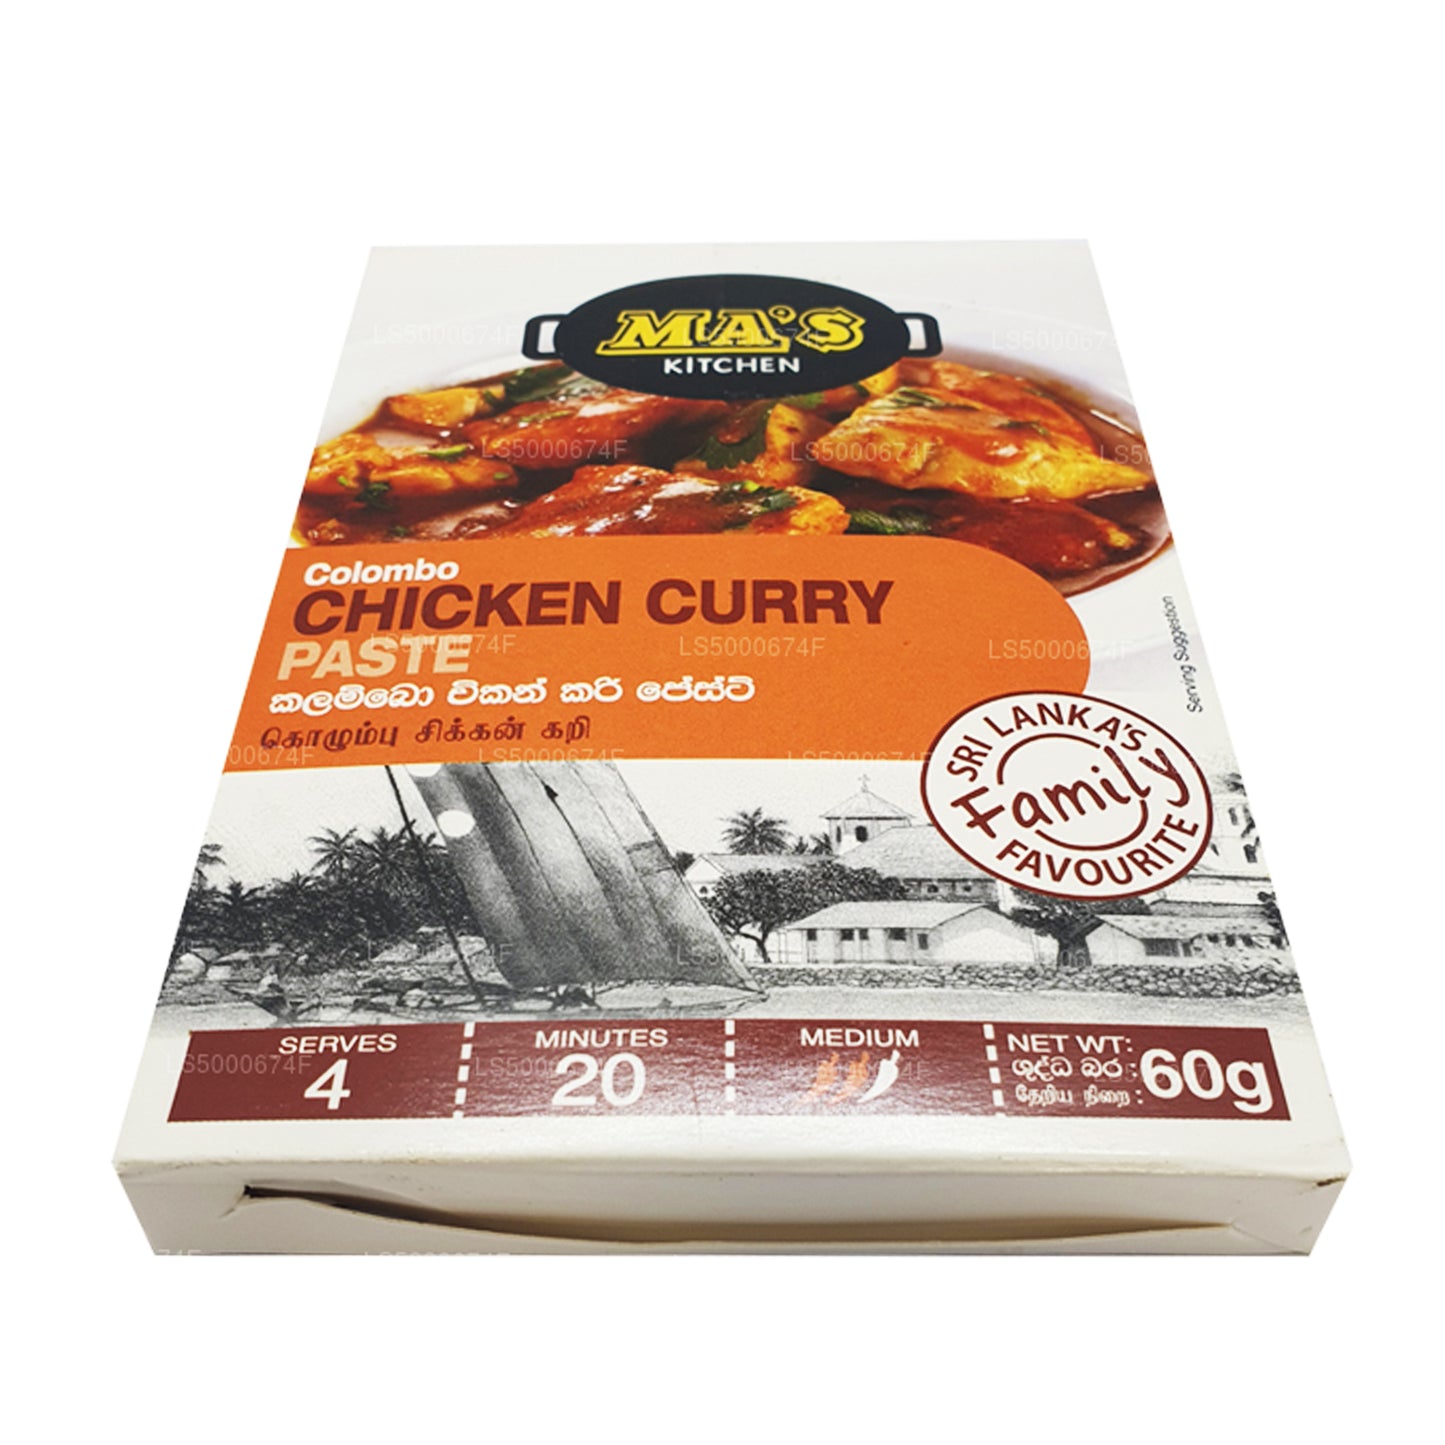 Pasta de pollo al curry Colombo de MA Kitchen (60 g)